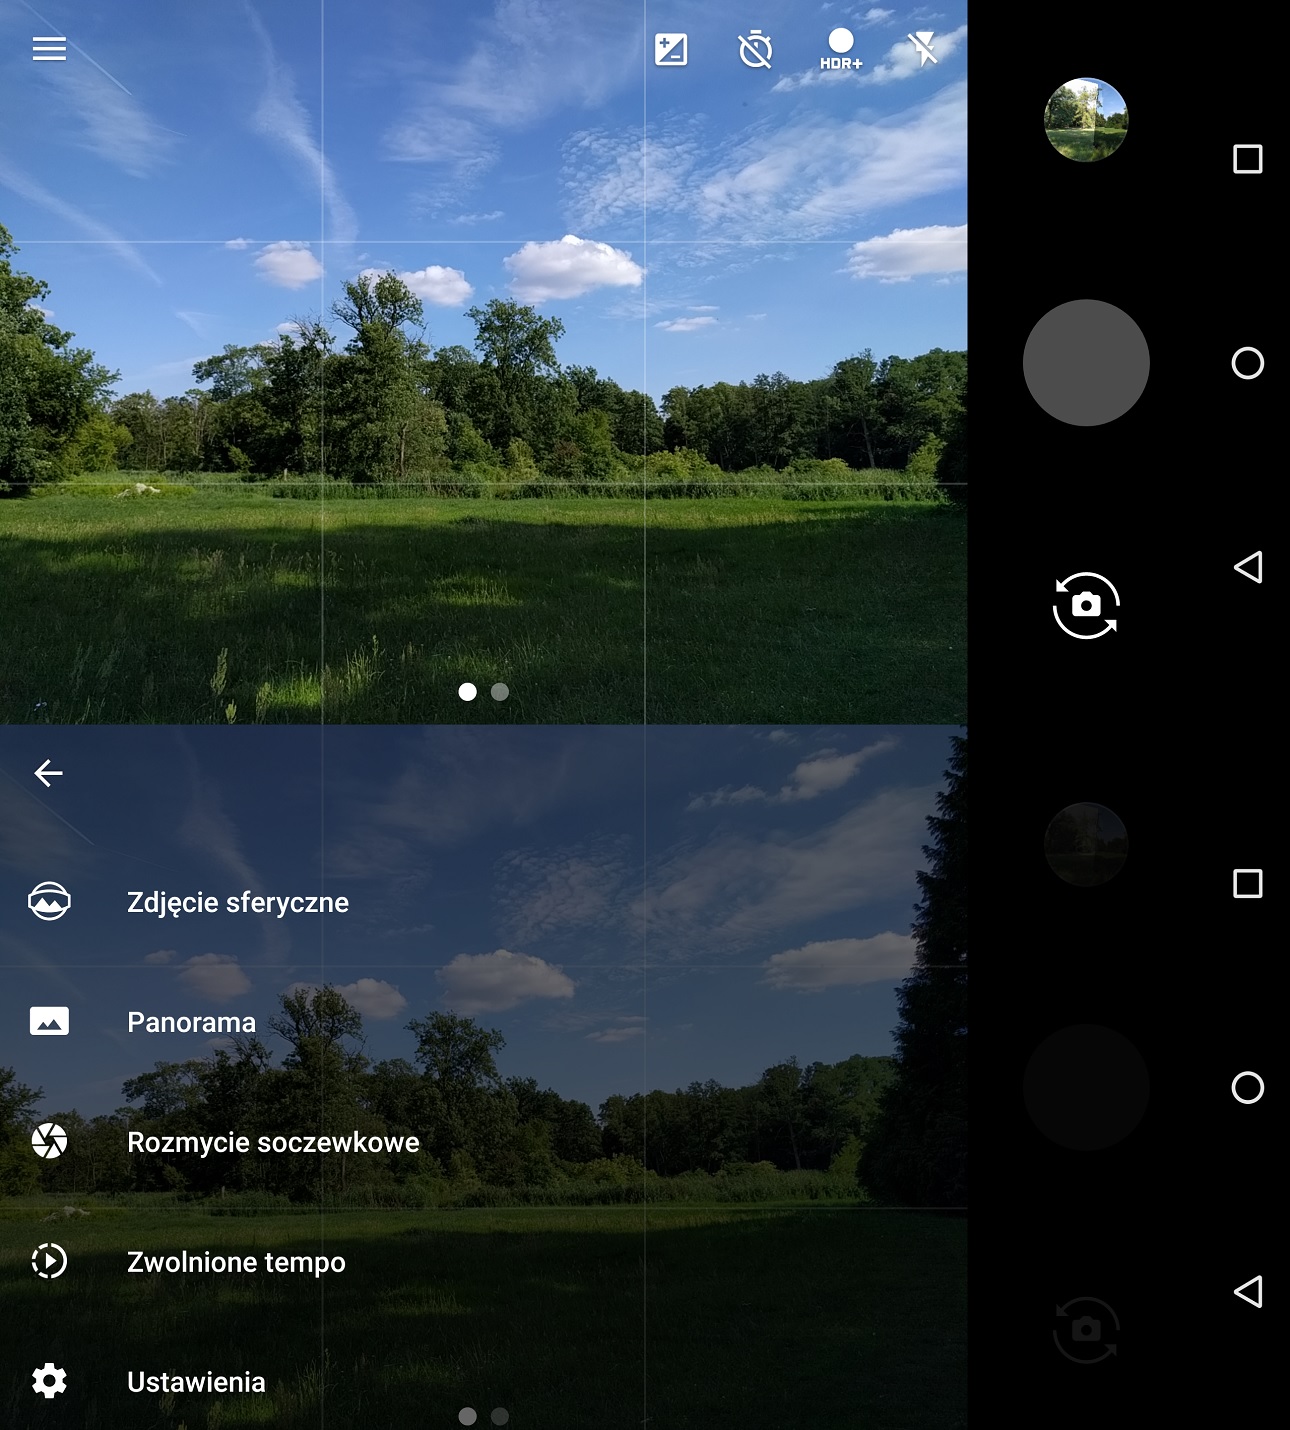 Huawei Nexus 6 - wygląd aplikacji Aparatu -recenzja 90sekund.pl